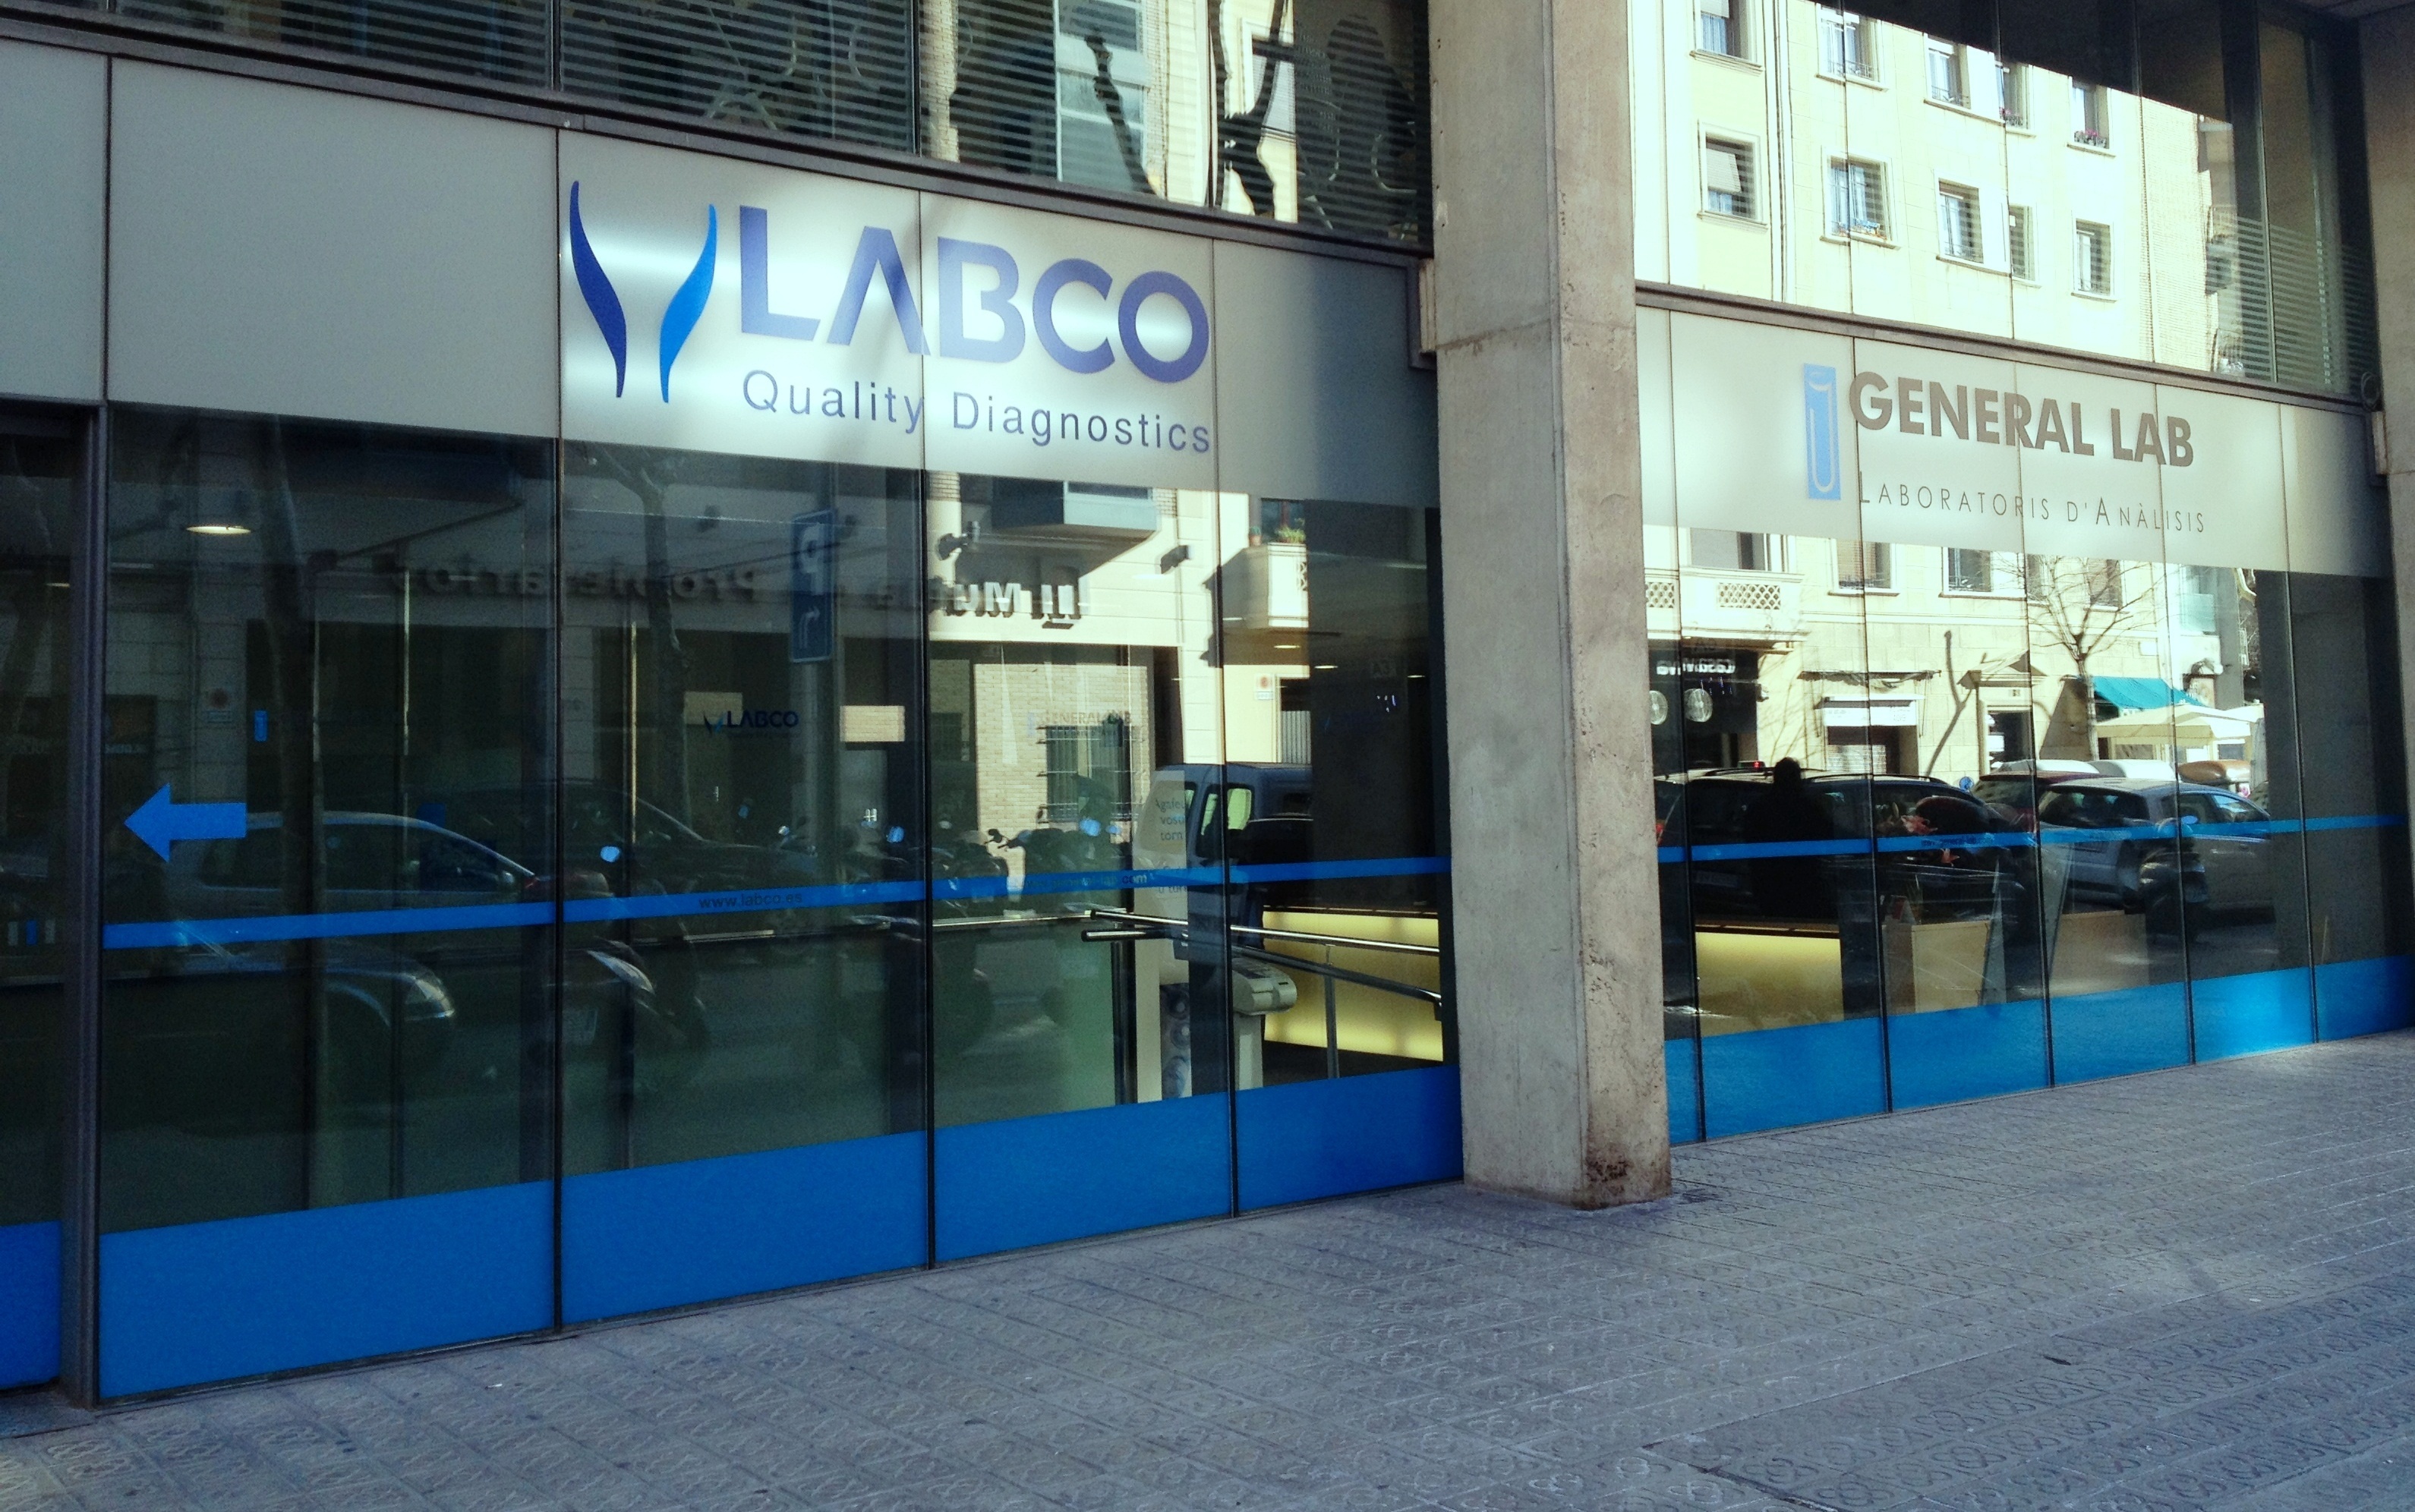 LABCO introduce en exclusiva para España el test de última generación para diagnóstico prenatal no invasivo